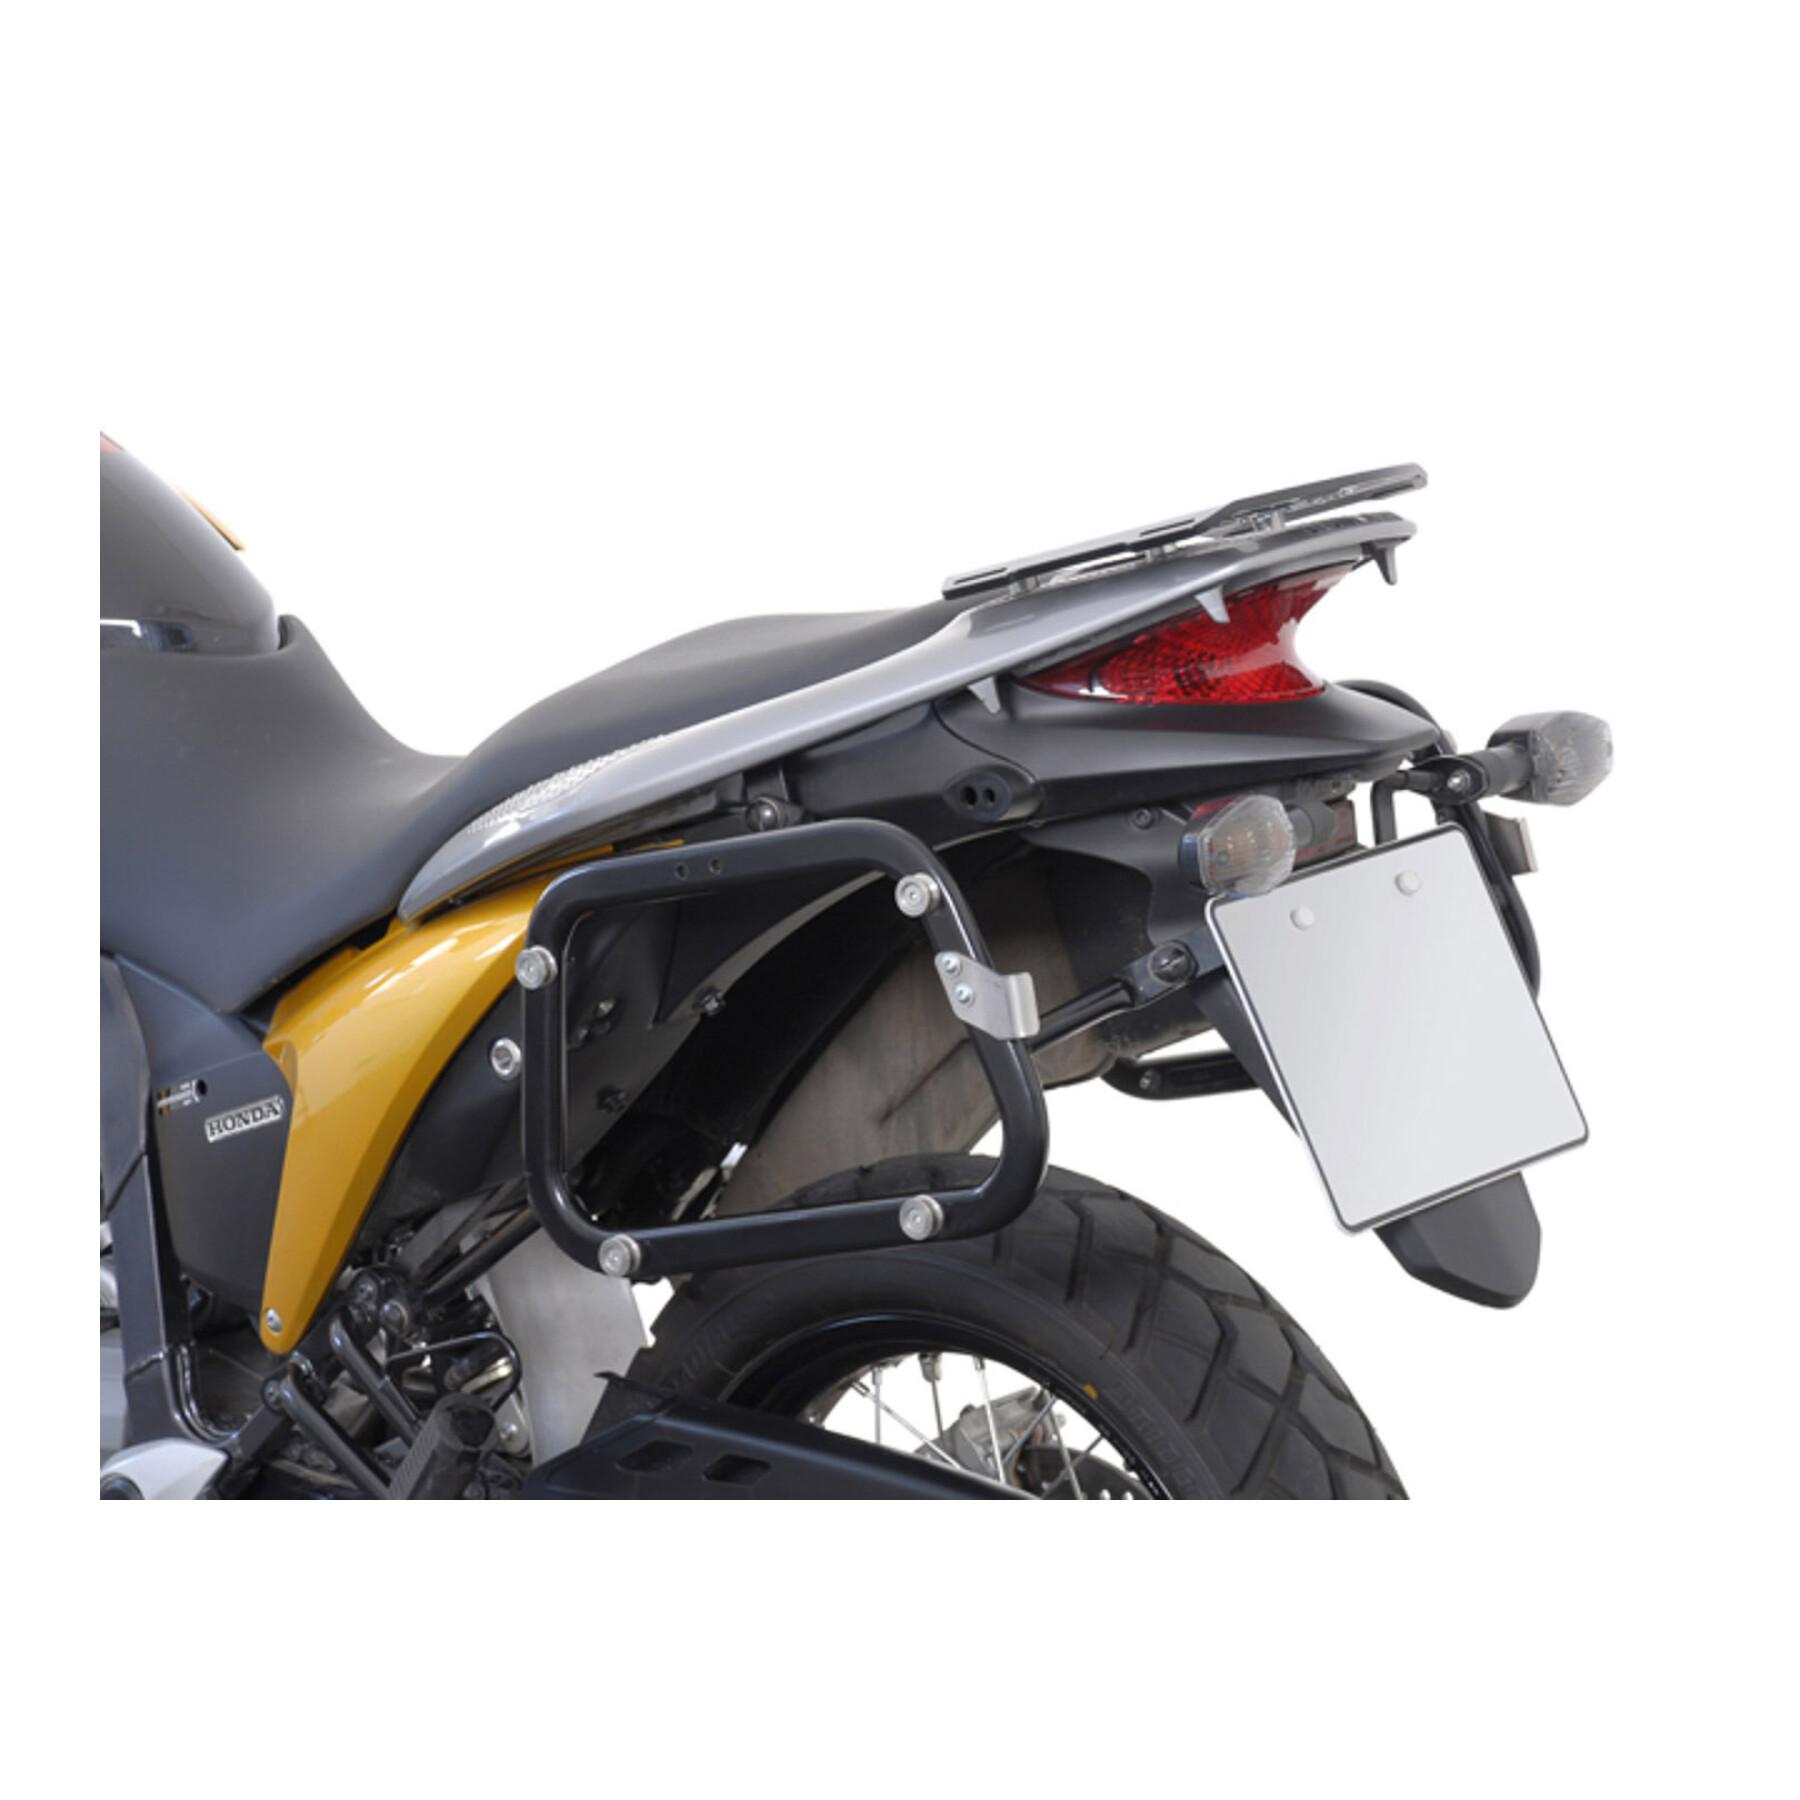 Sidostöd för motorcykel Sw-Motech Evo. Honda Xl 700 V Transalp (07-12)